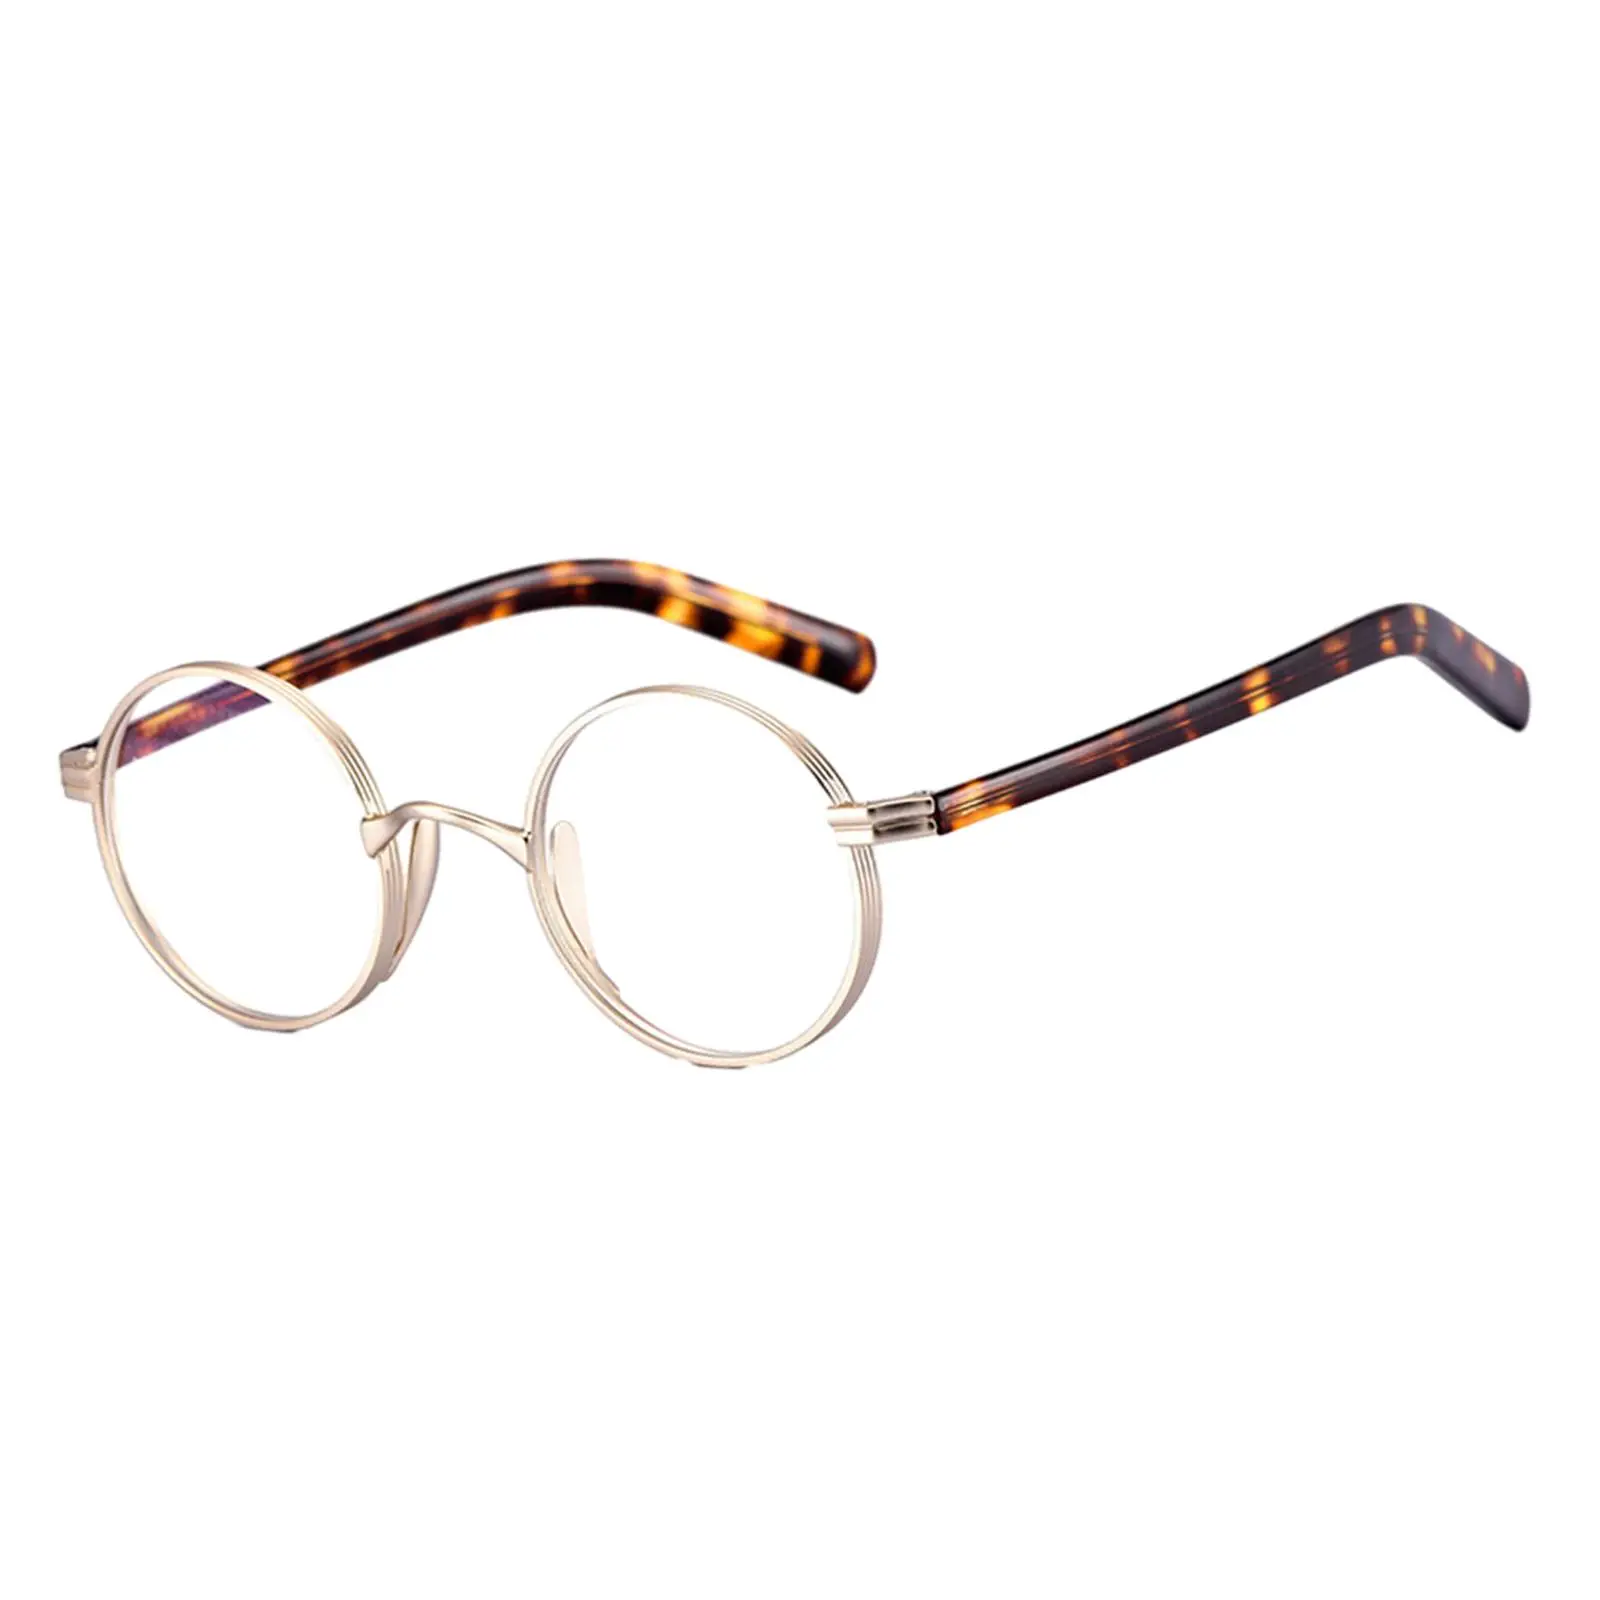 Glasses Frames Ultralight for Women Men Retro Round Full Rim Oval Oversized Eyeglasses Frames Titanium Alloy Eyeglass Frame